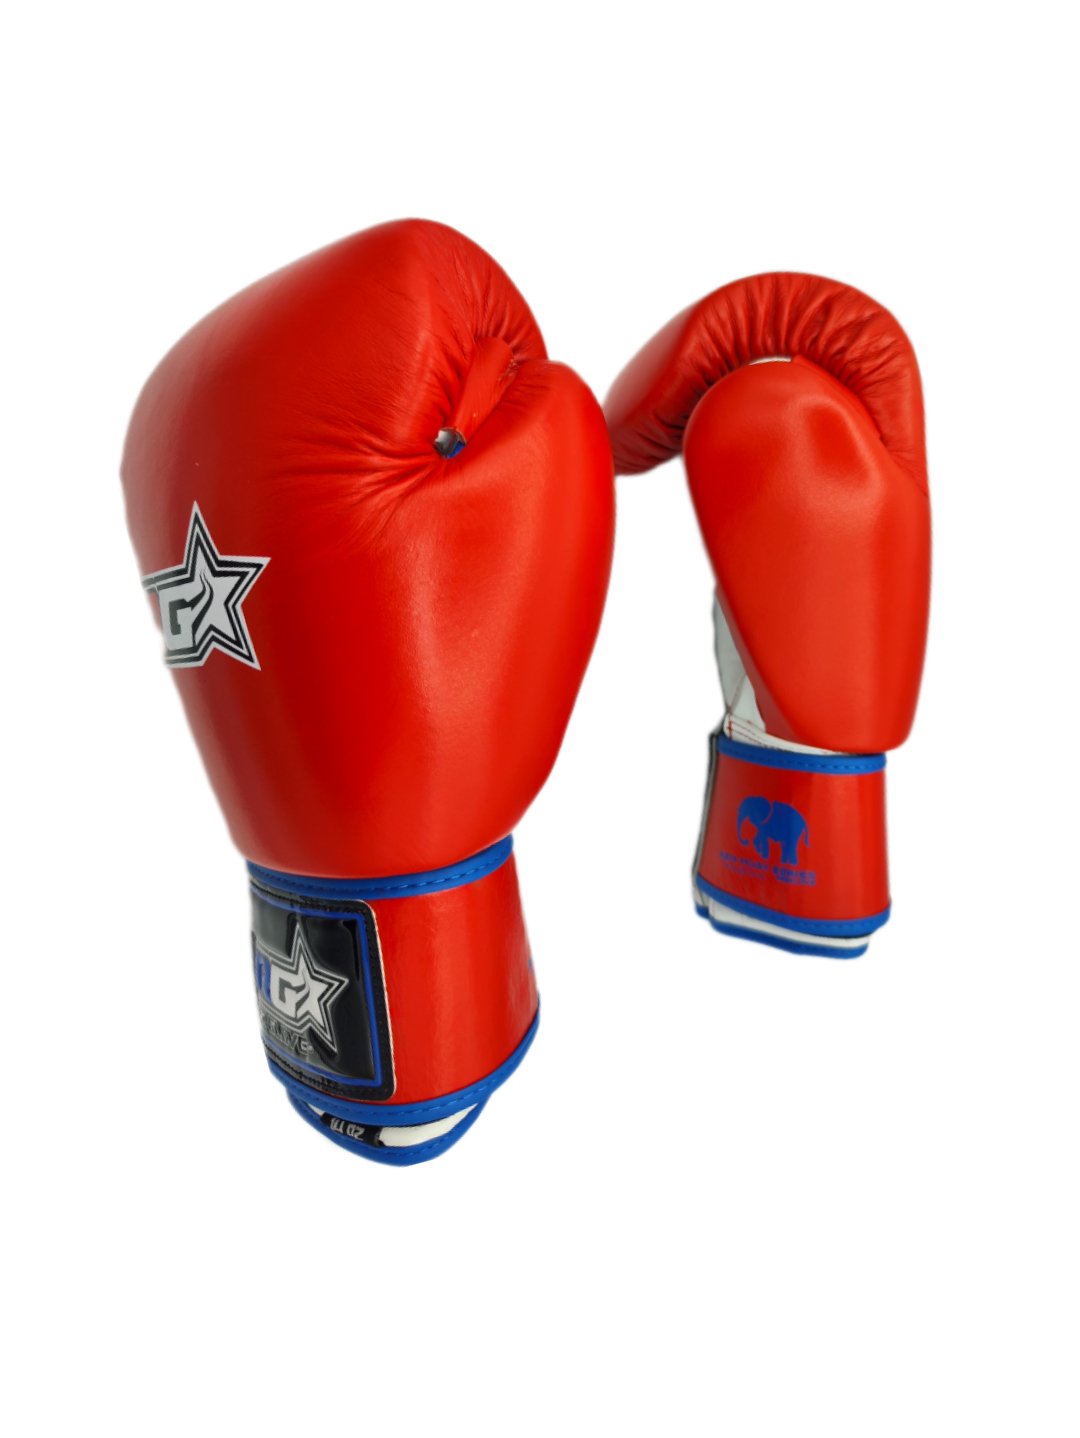 8-16 onzas Pretorian mayorista de equipos de gimnasia gemelos de Muay Thai  Boxing Guantes de perforación rojo Tkd MMA hombres luchando conceder el uso  de guantes de boxeo en el gimnasio 